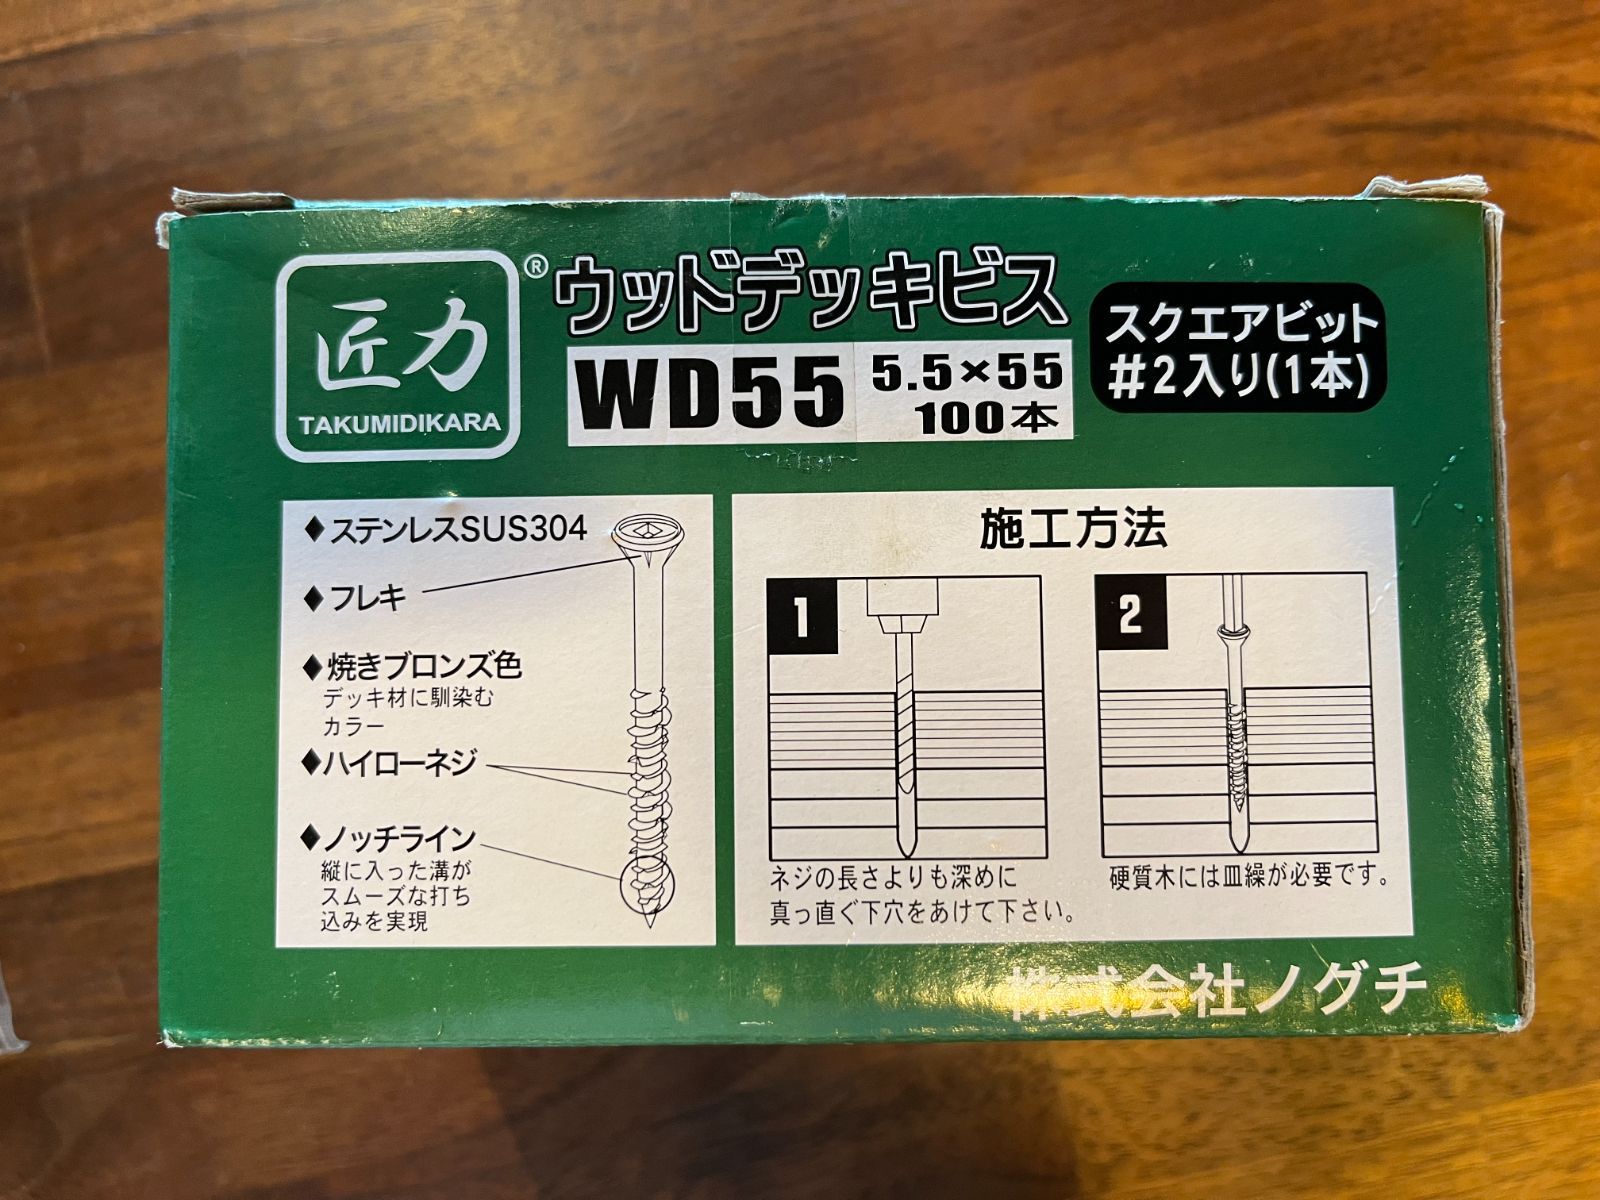 ウッドデッキビス WD55（5.5×55） 112本 - Blue Apple ショップ - メルカリ